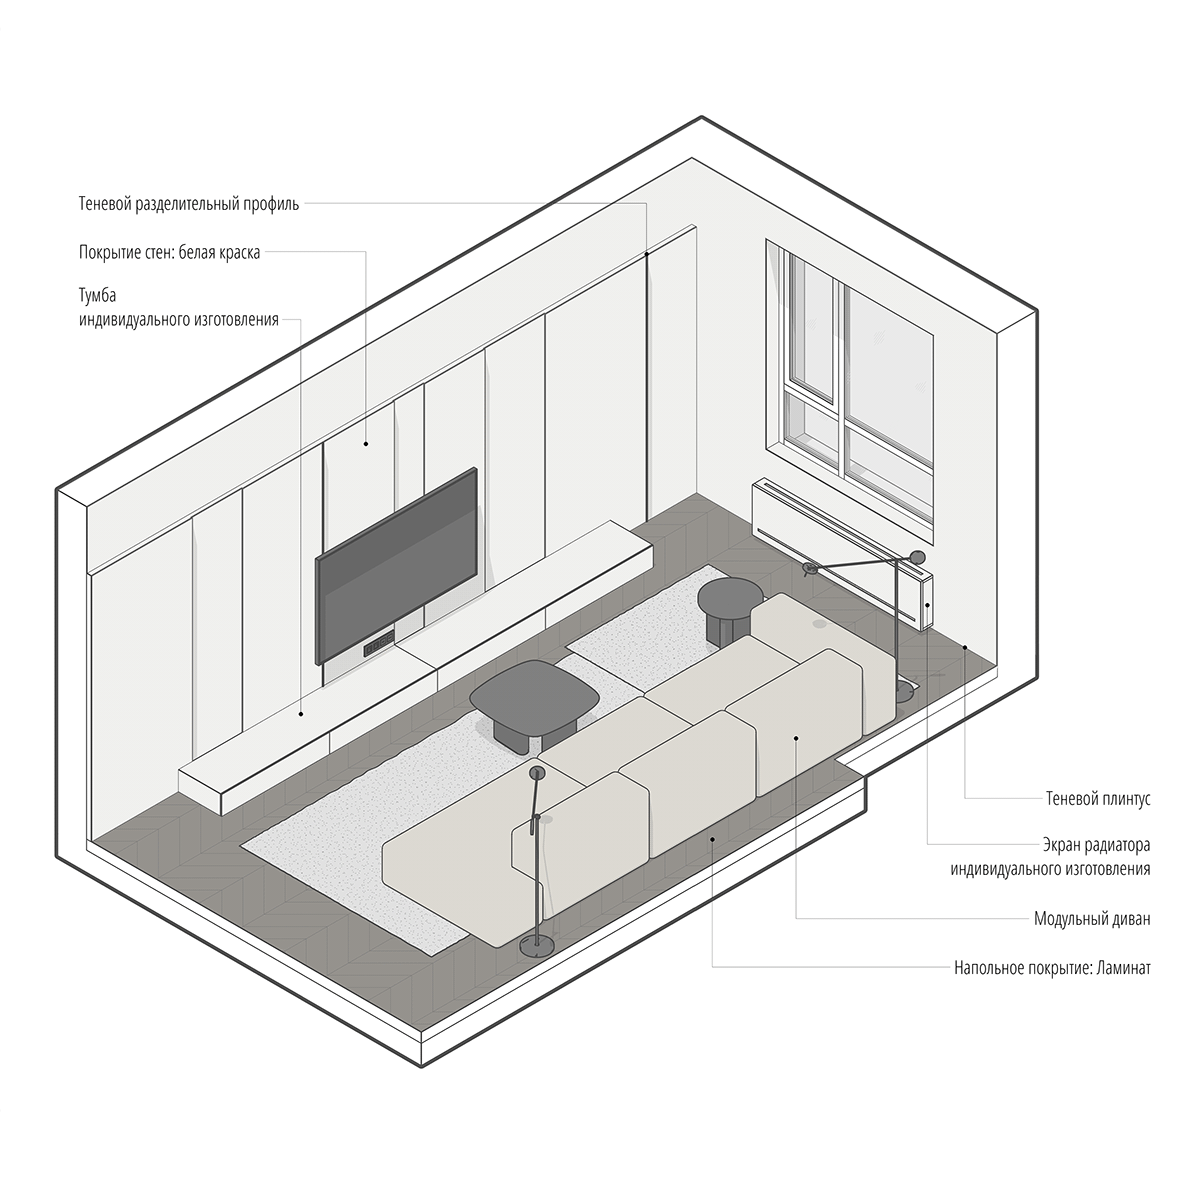 3D 3ds max architecture corona design designs Interior interior design  Render visualization